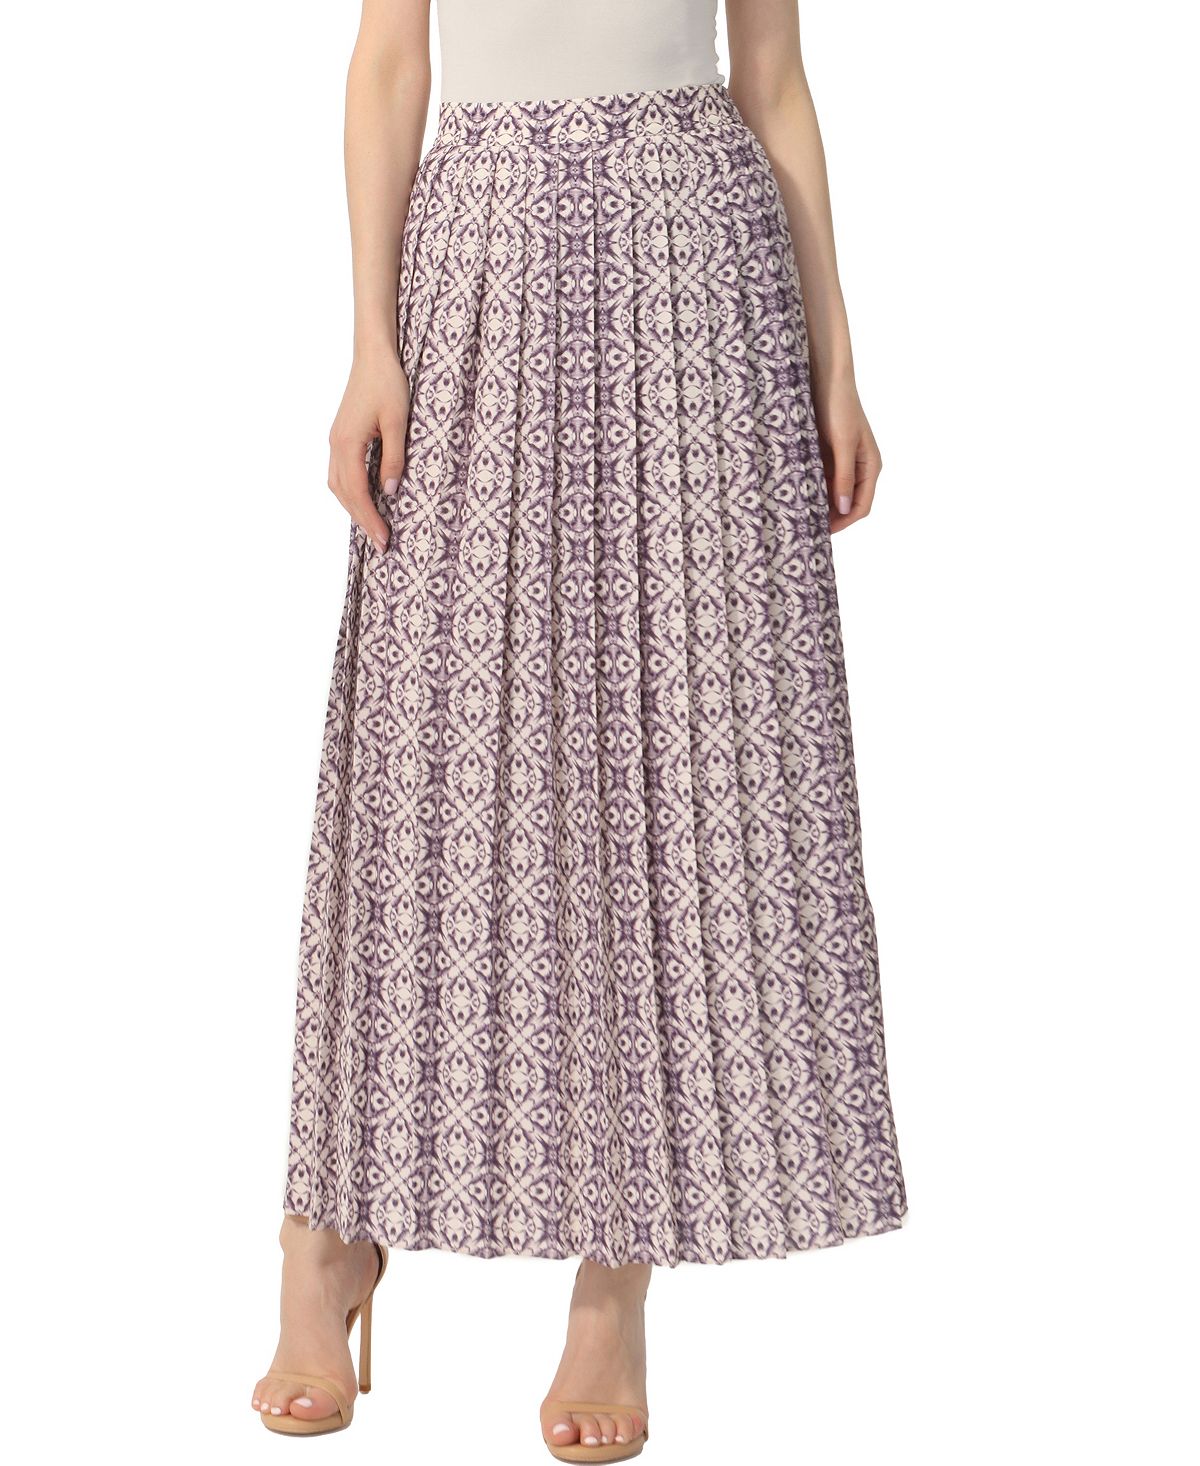 Женская длинная юбка со складками и принтом kimi + kai